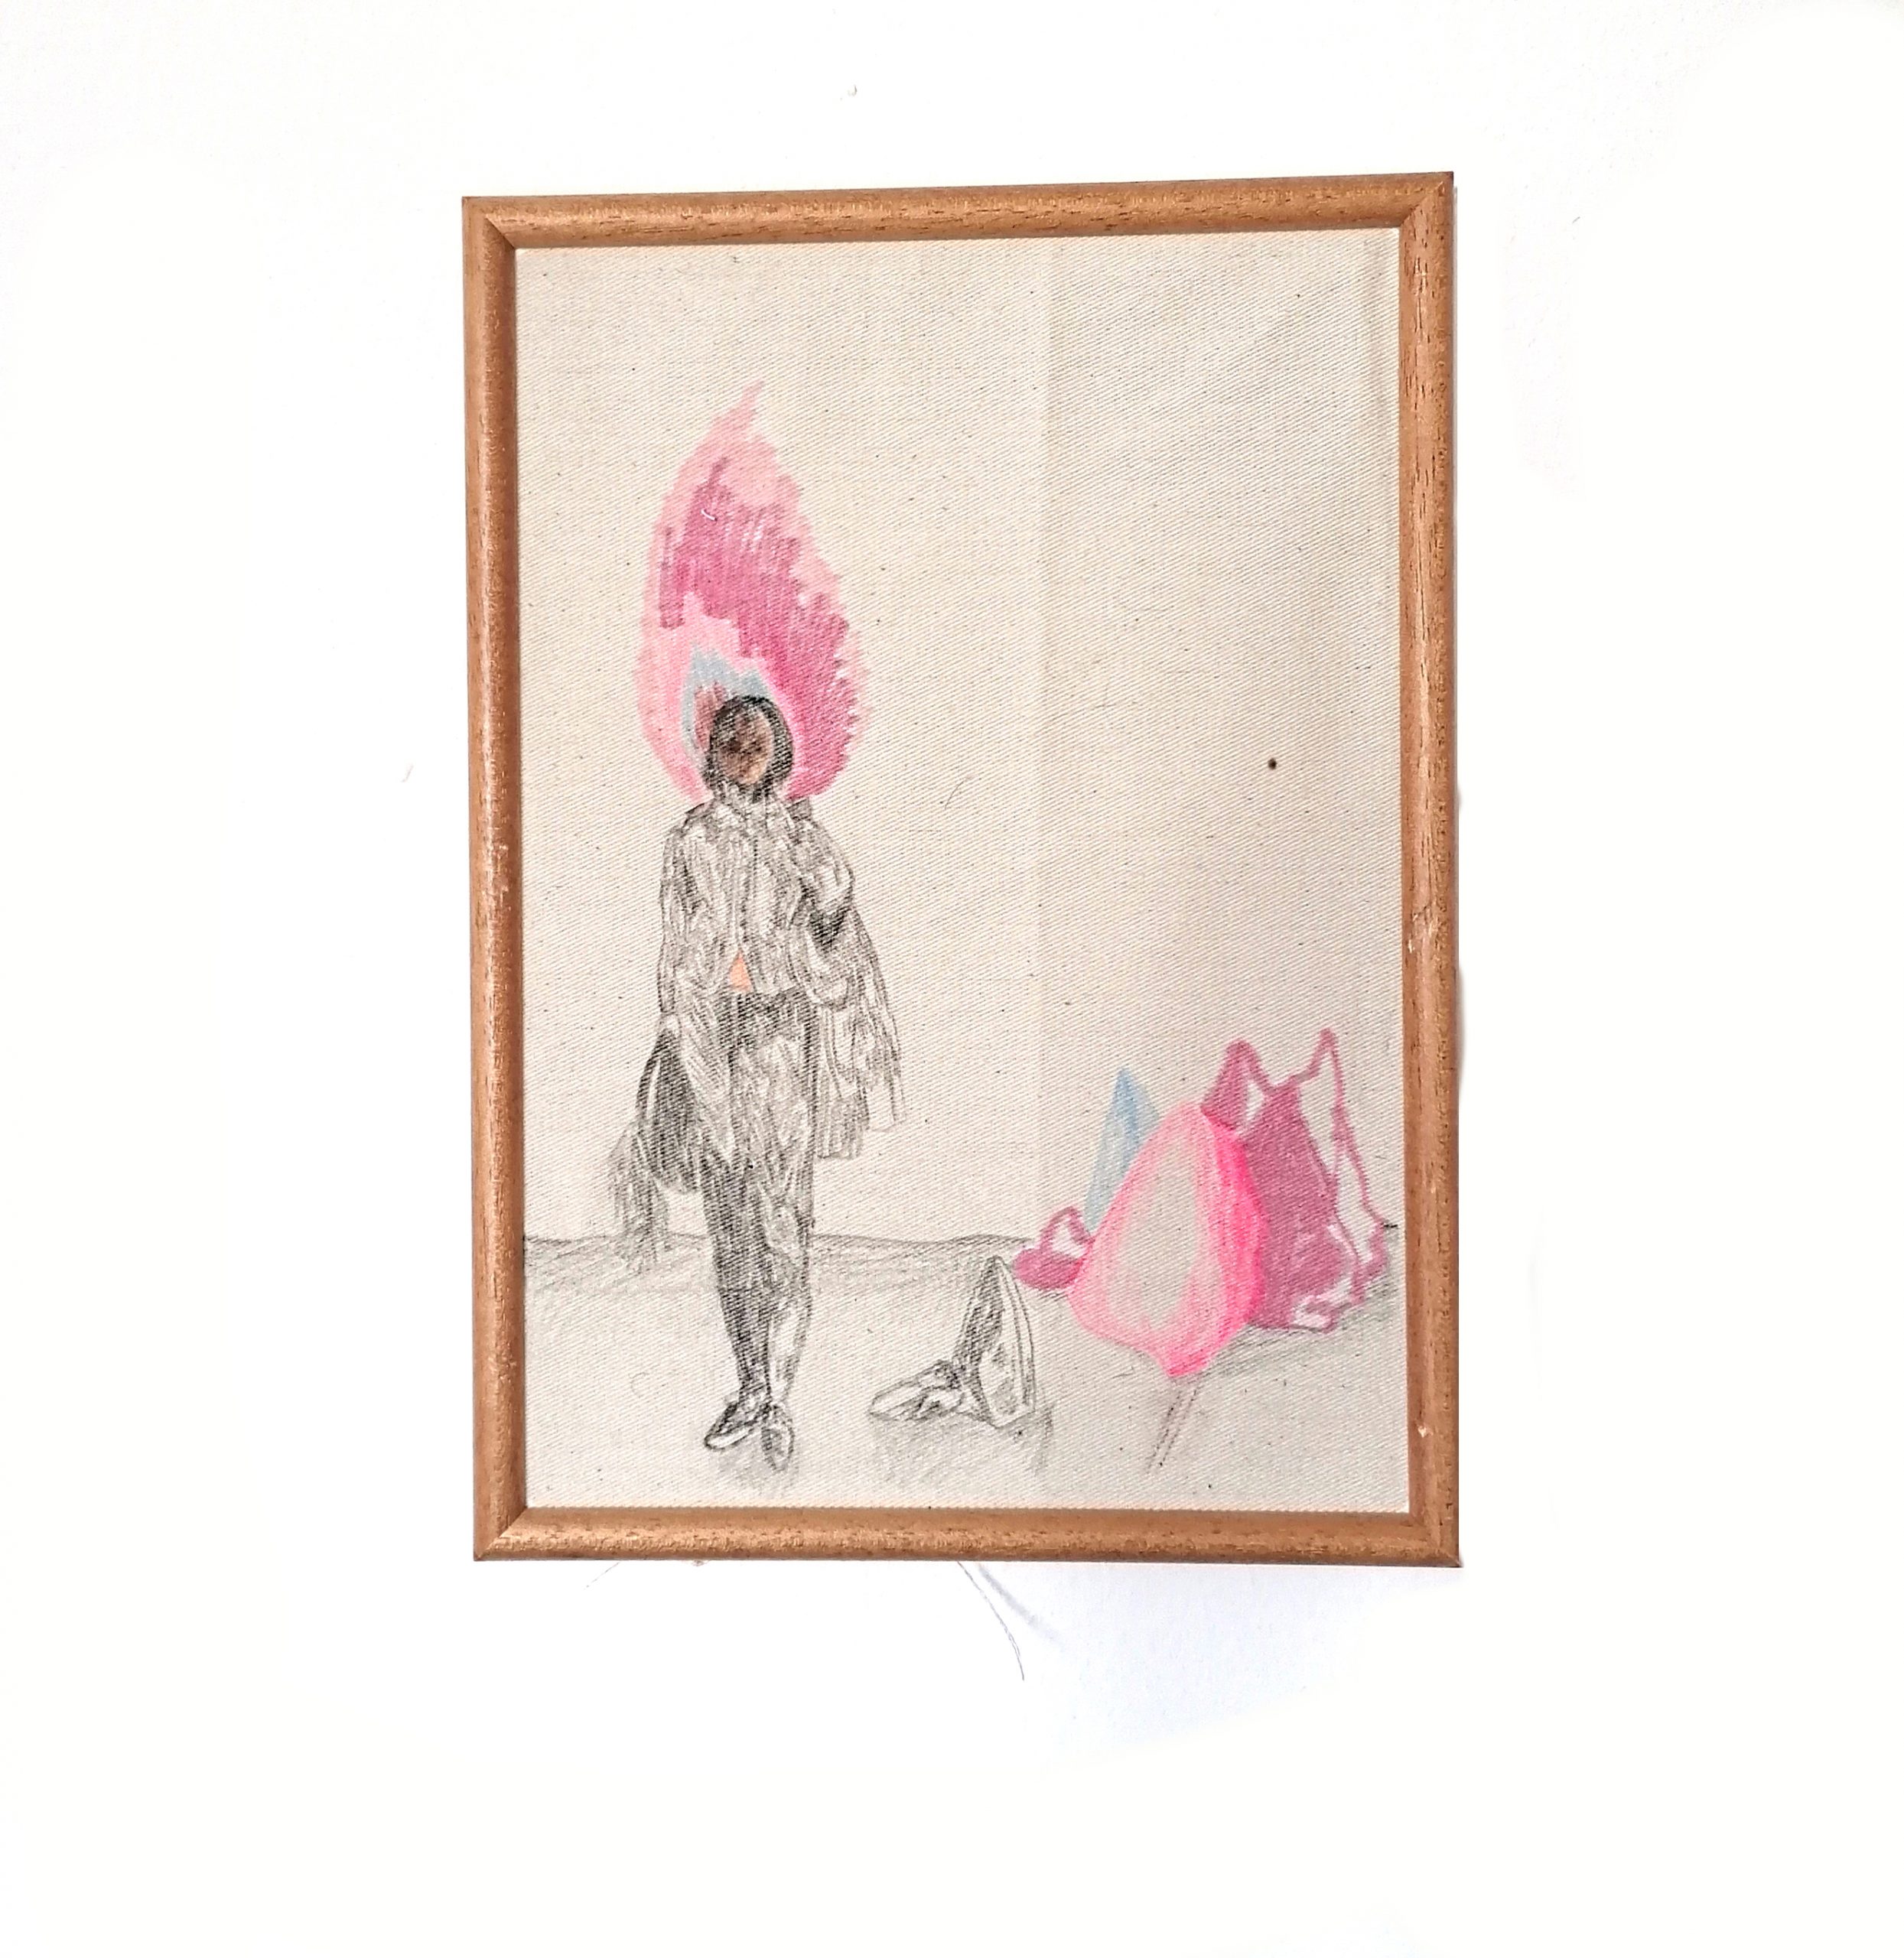 Julia Zöhrer, Homogenes Milieu in Gruppen schaffen, 32x23 cm, Pencil on fabric, 2019